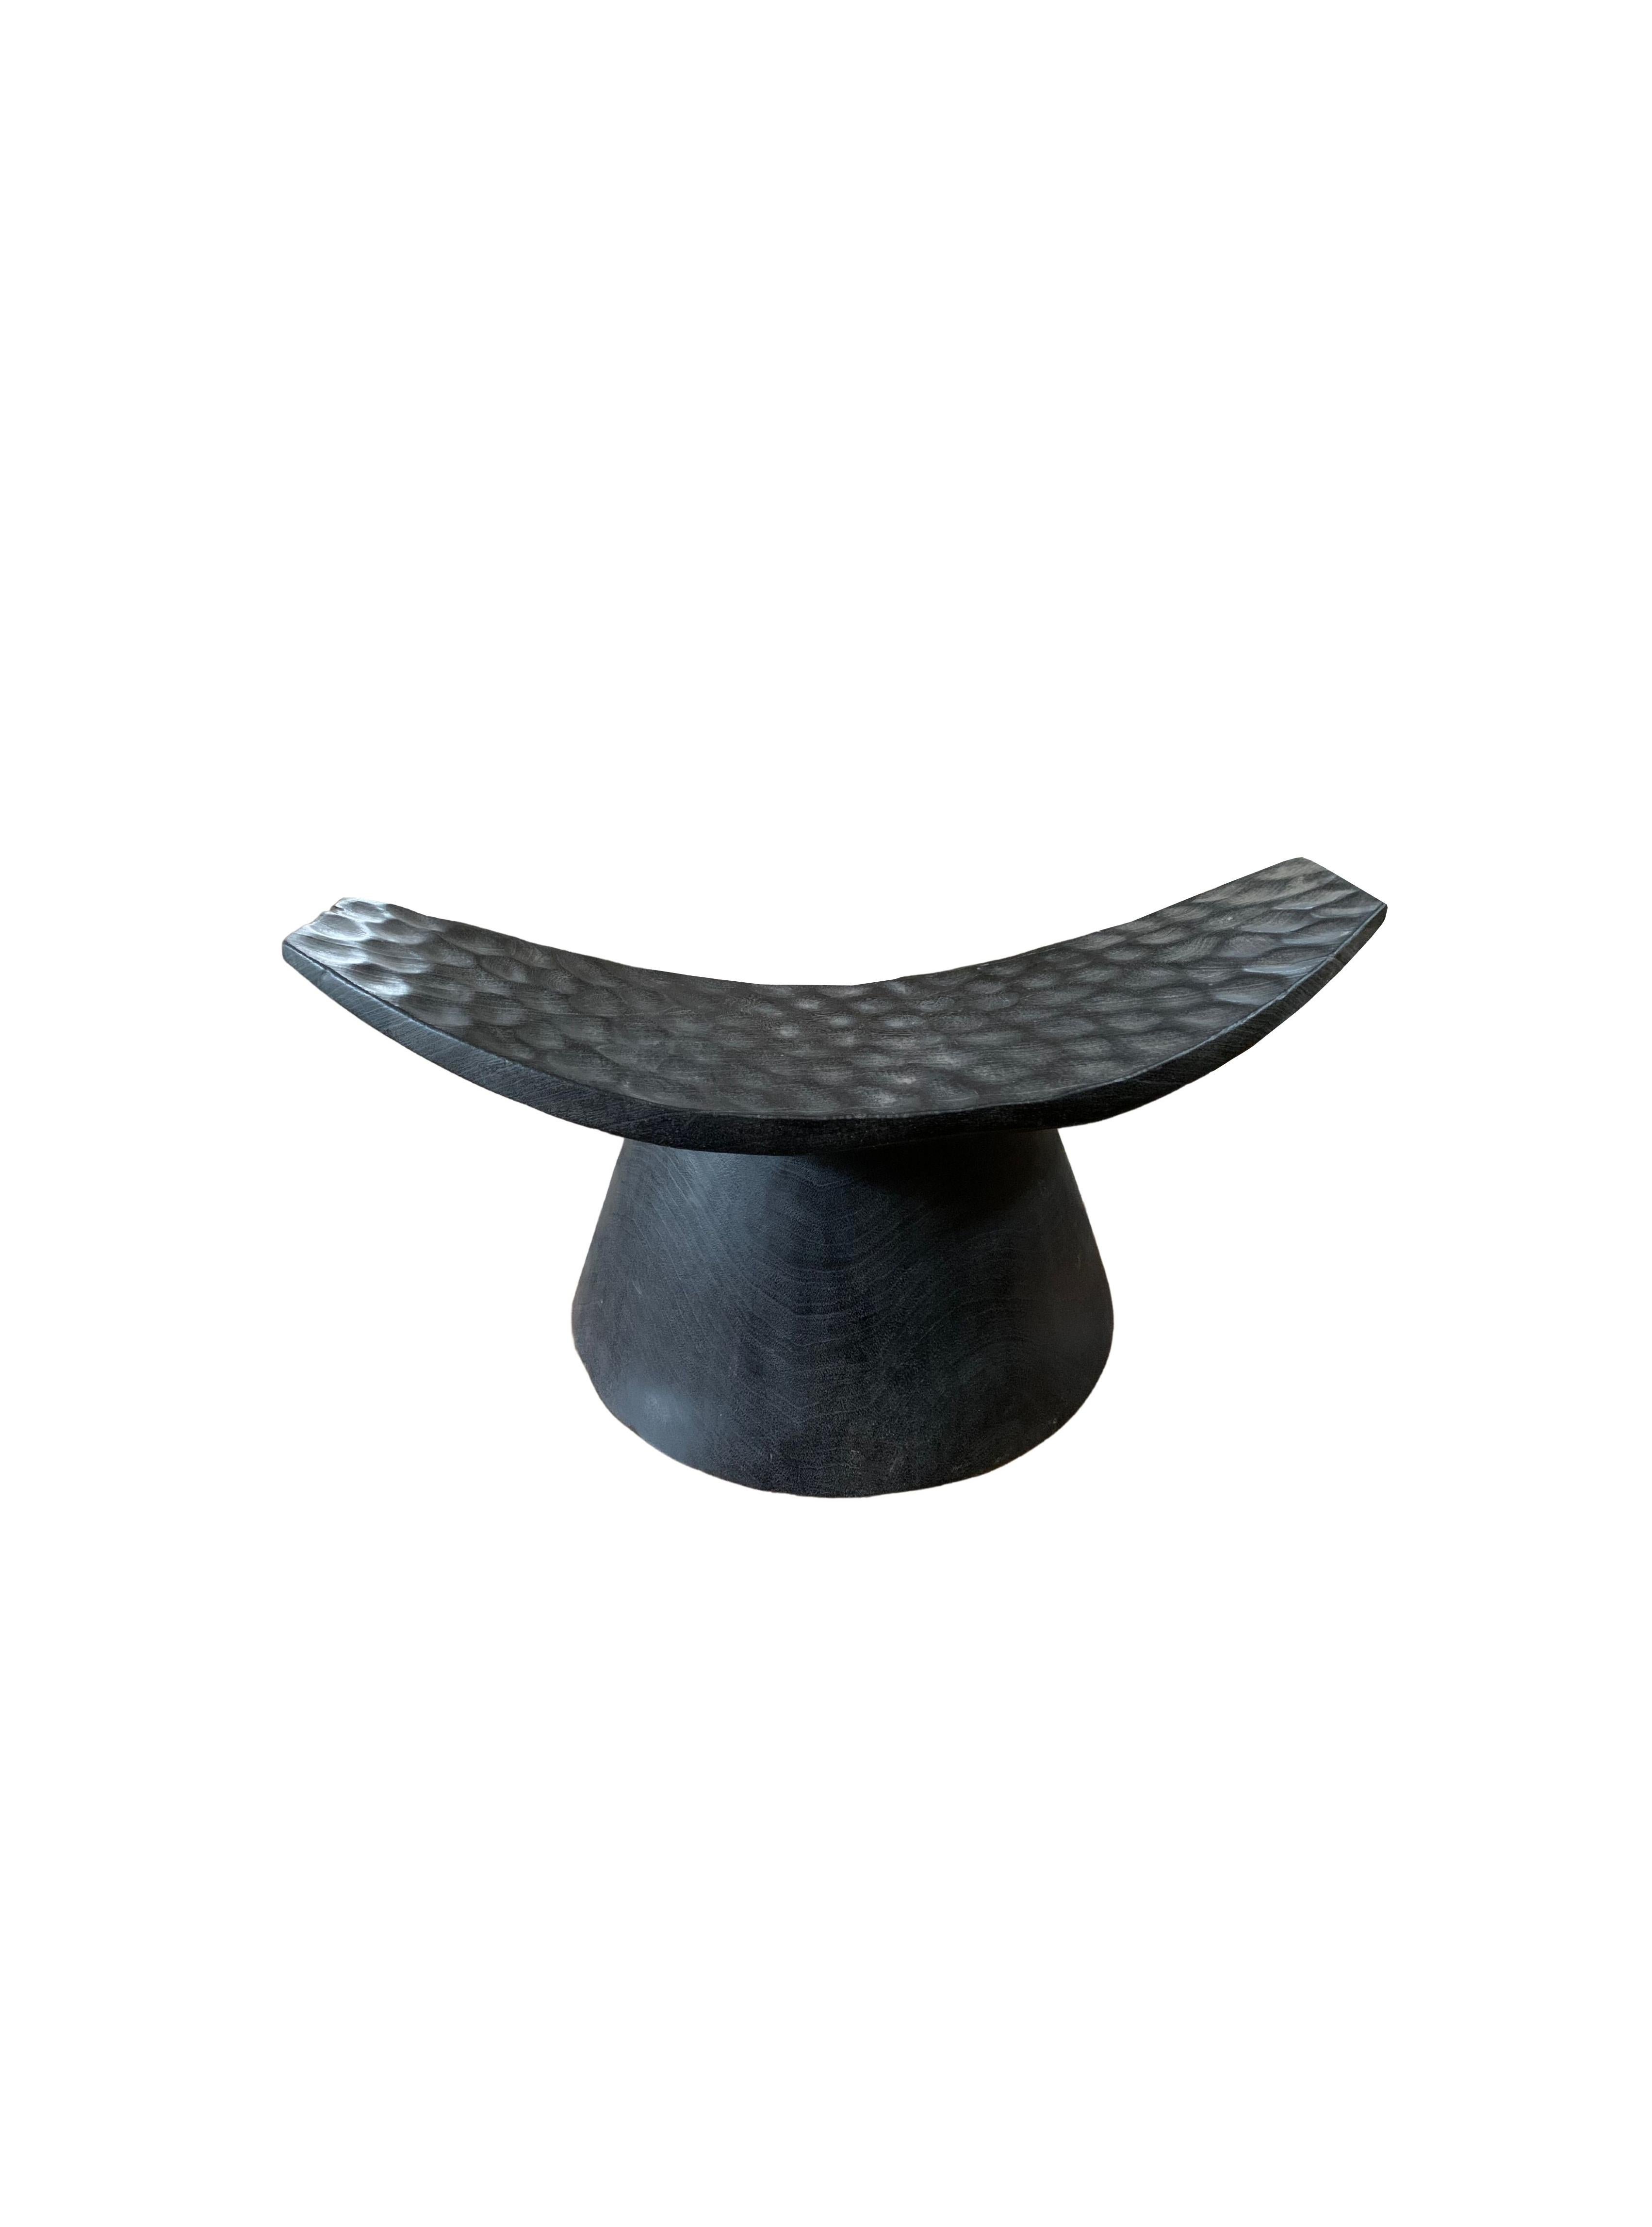 Organique Tabouret sculptural avec assise incurvée et détails taillés à la main, finition brûlée en vente